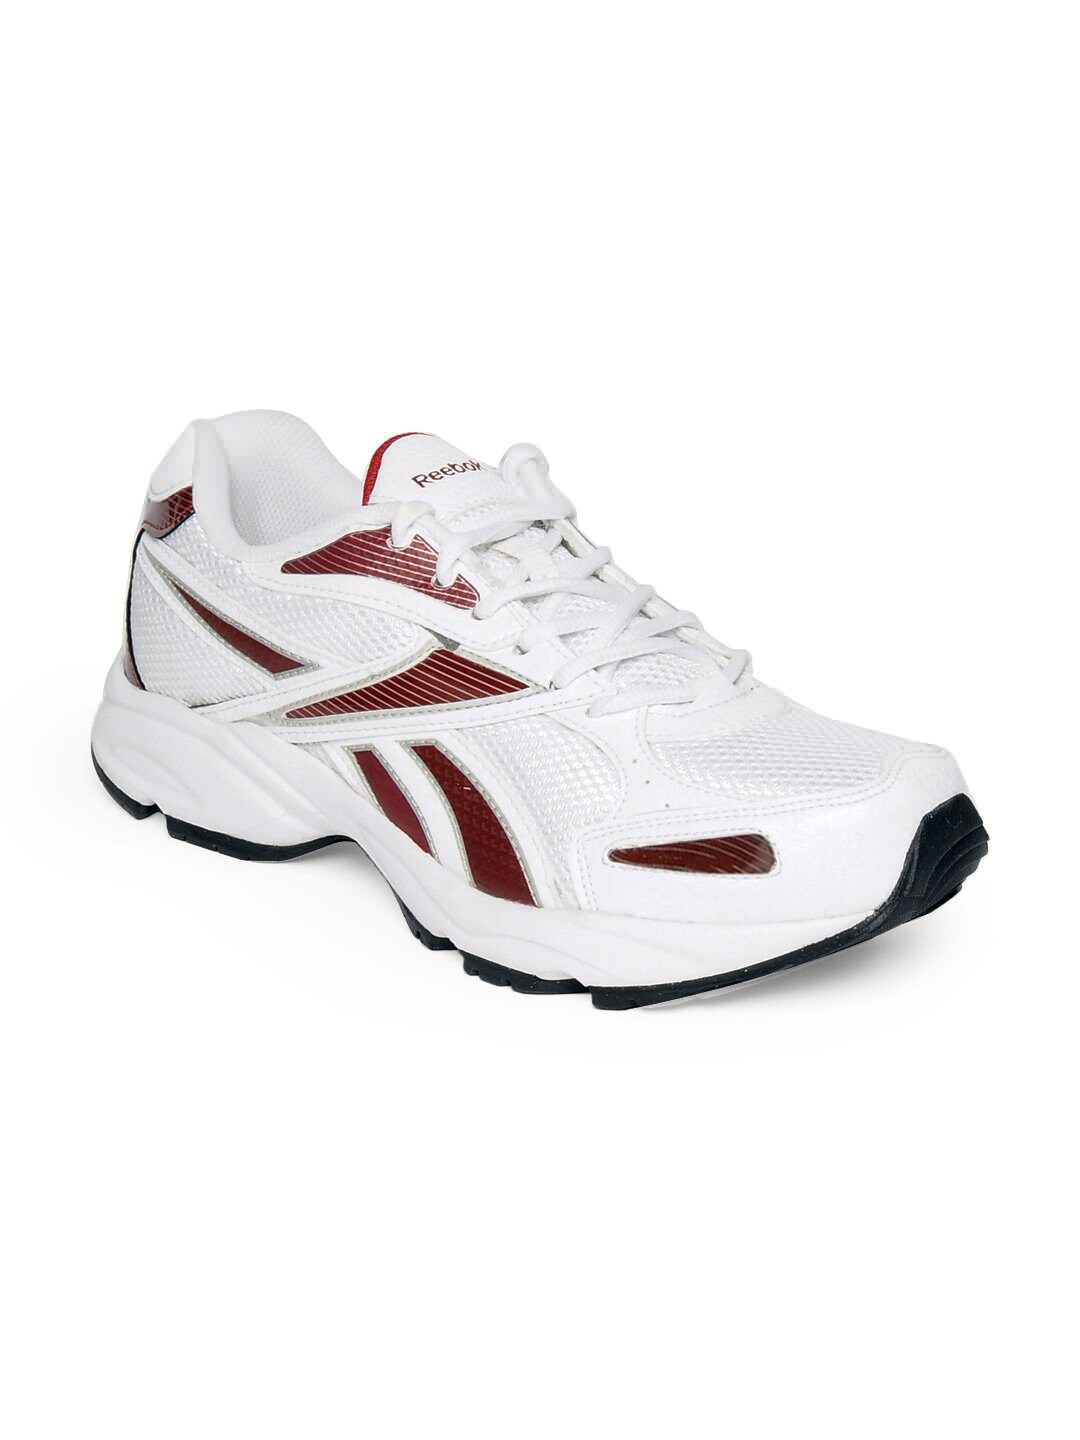 Reebok Men White United Runner Sports Shoes